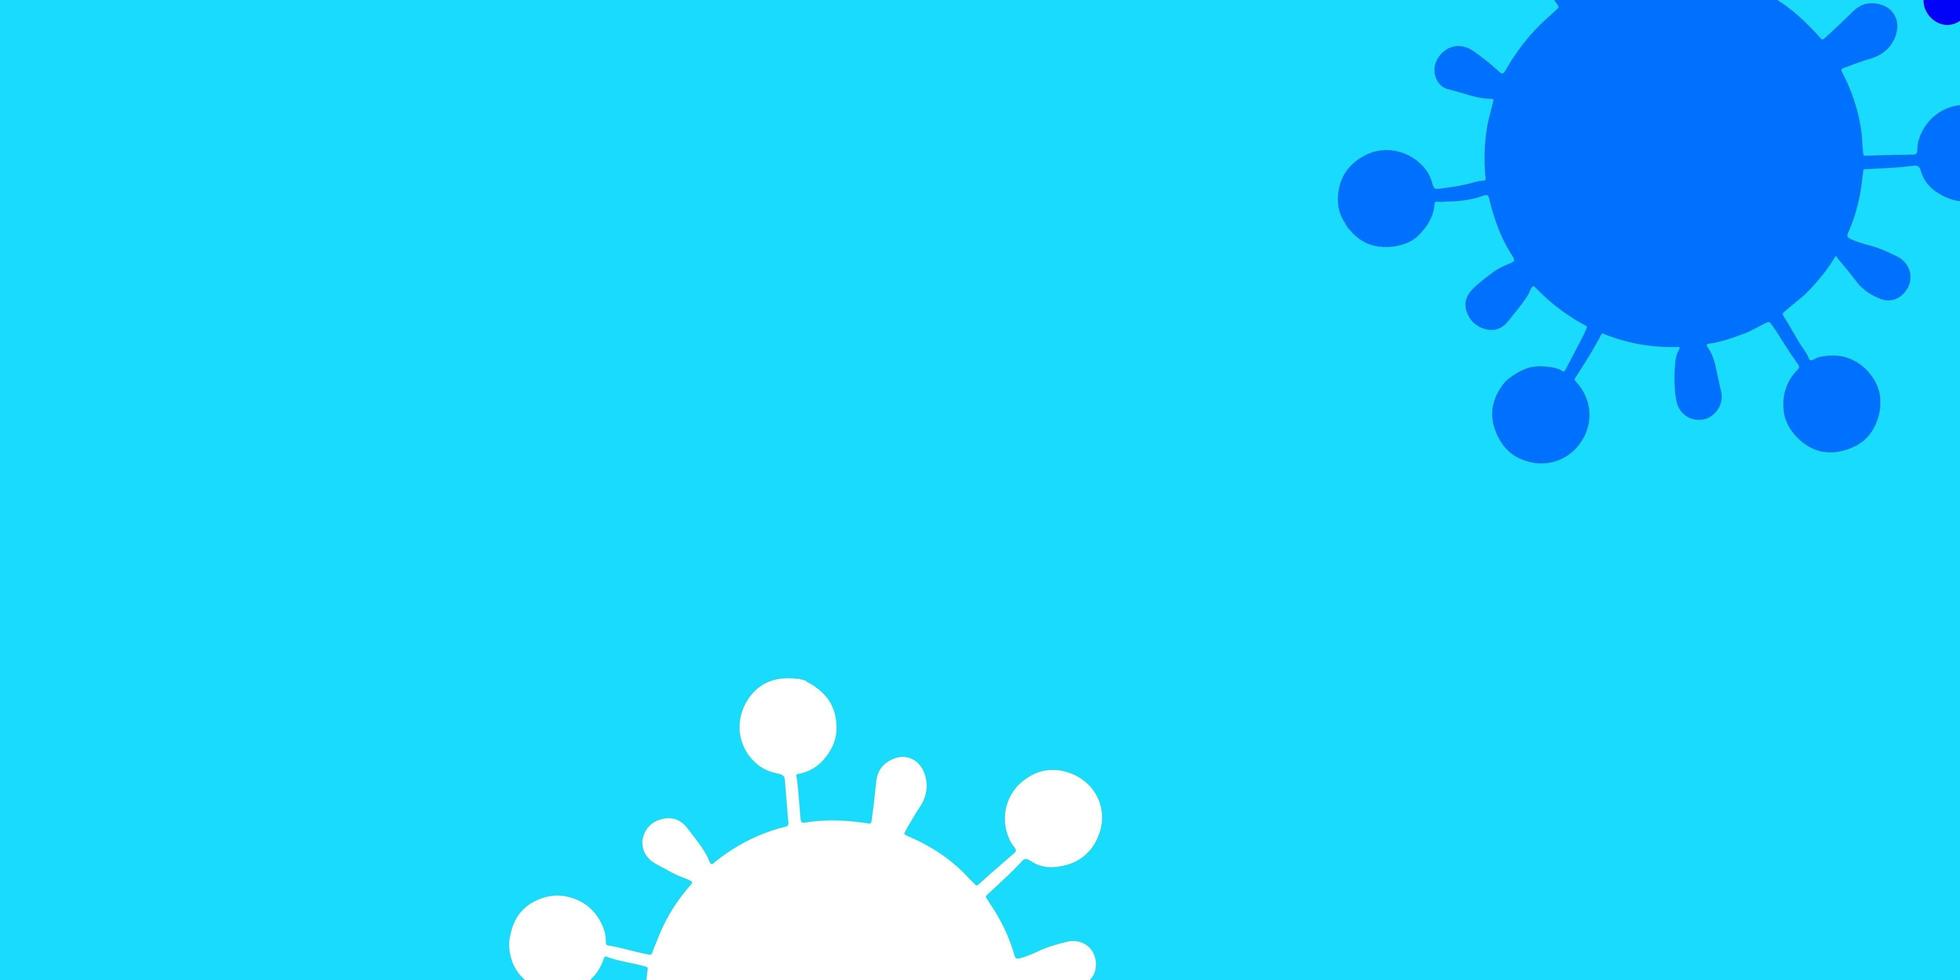 modèle vectoriel bleu clair avec des éléments de coronavirus.